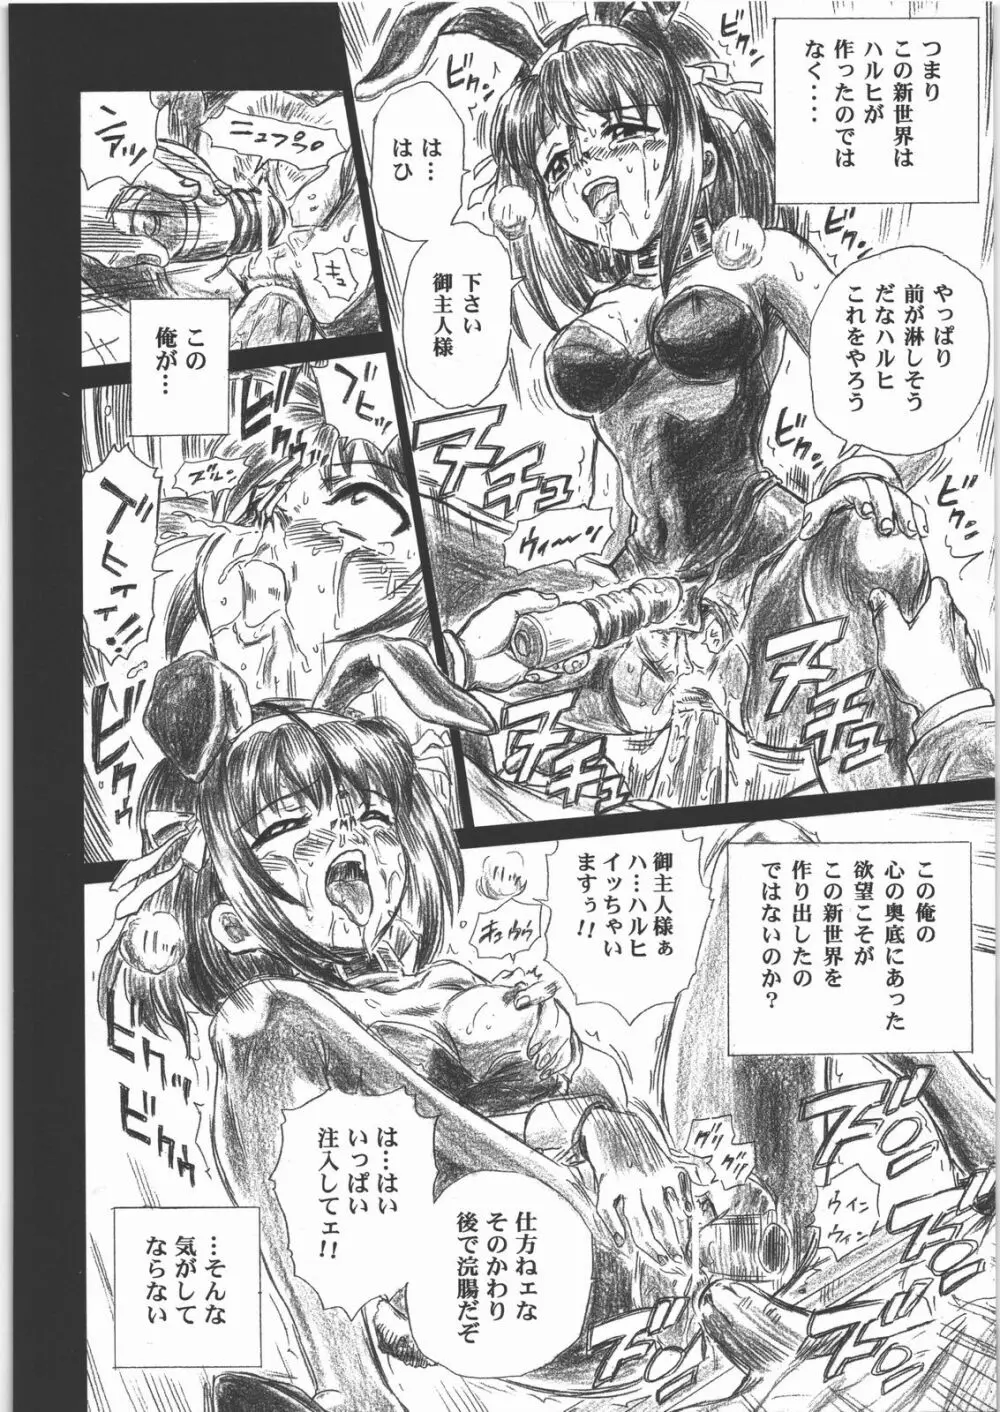 TAIL-MAN HARUHI SUZUMIYA BOOK 39ページ